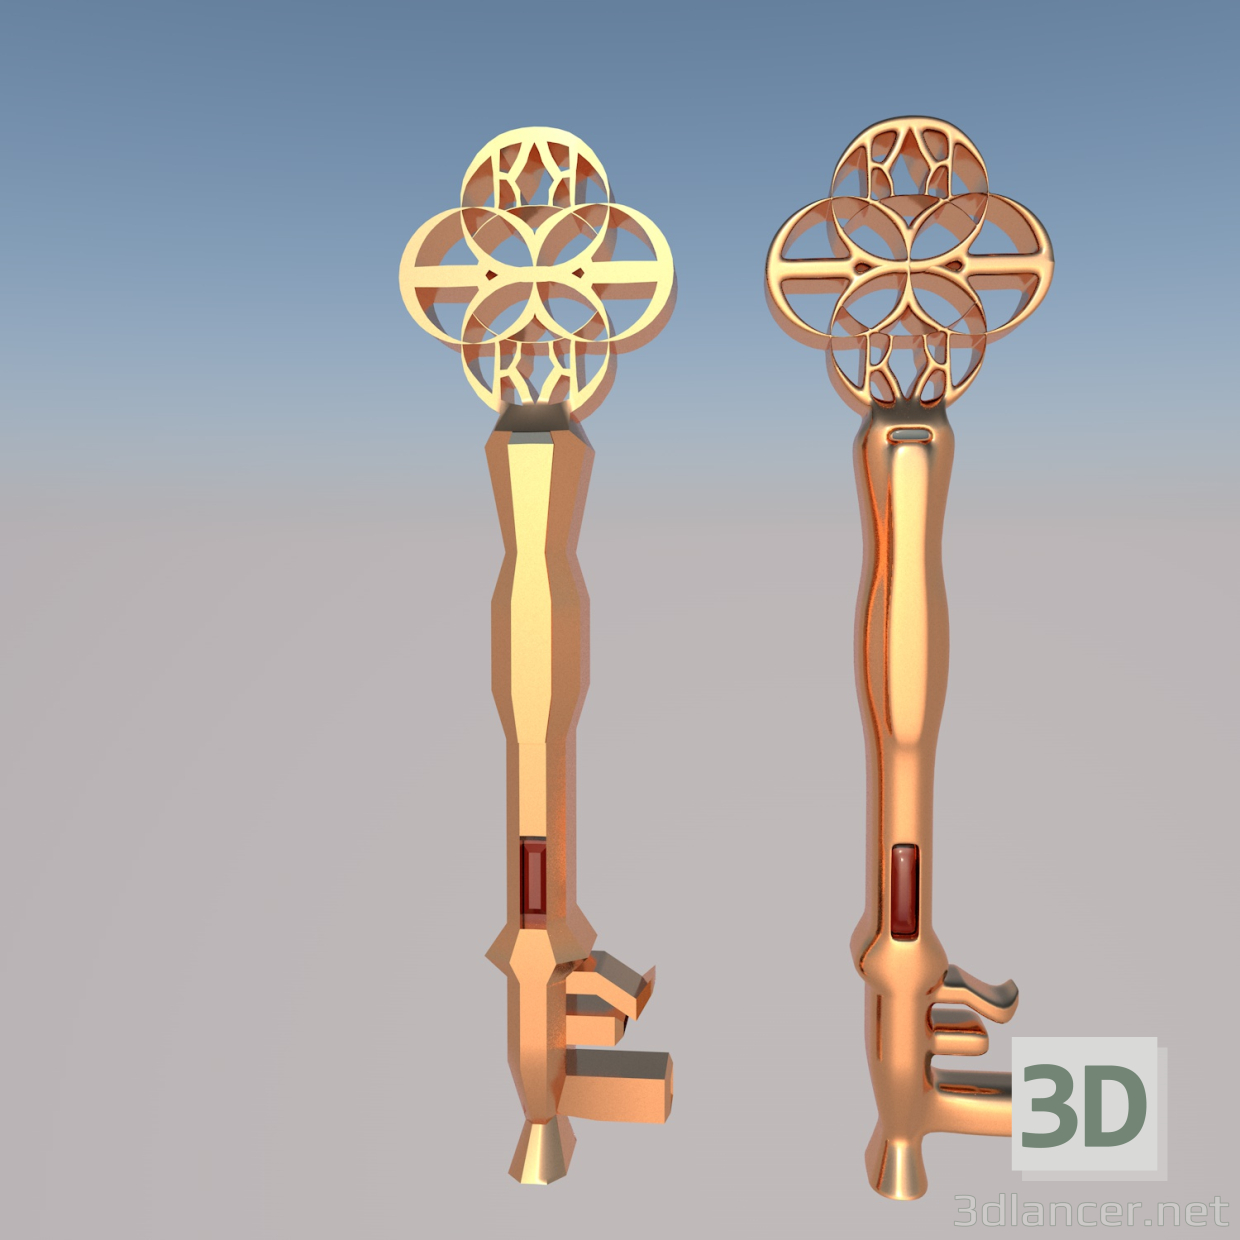 3d Golden Encrusted Key model buy - render